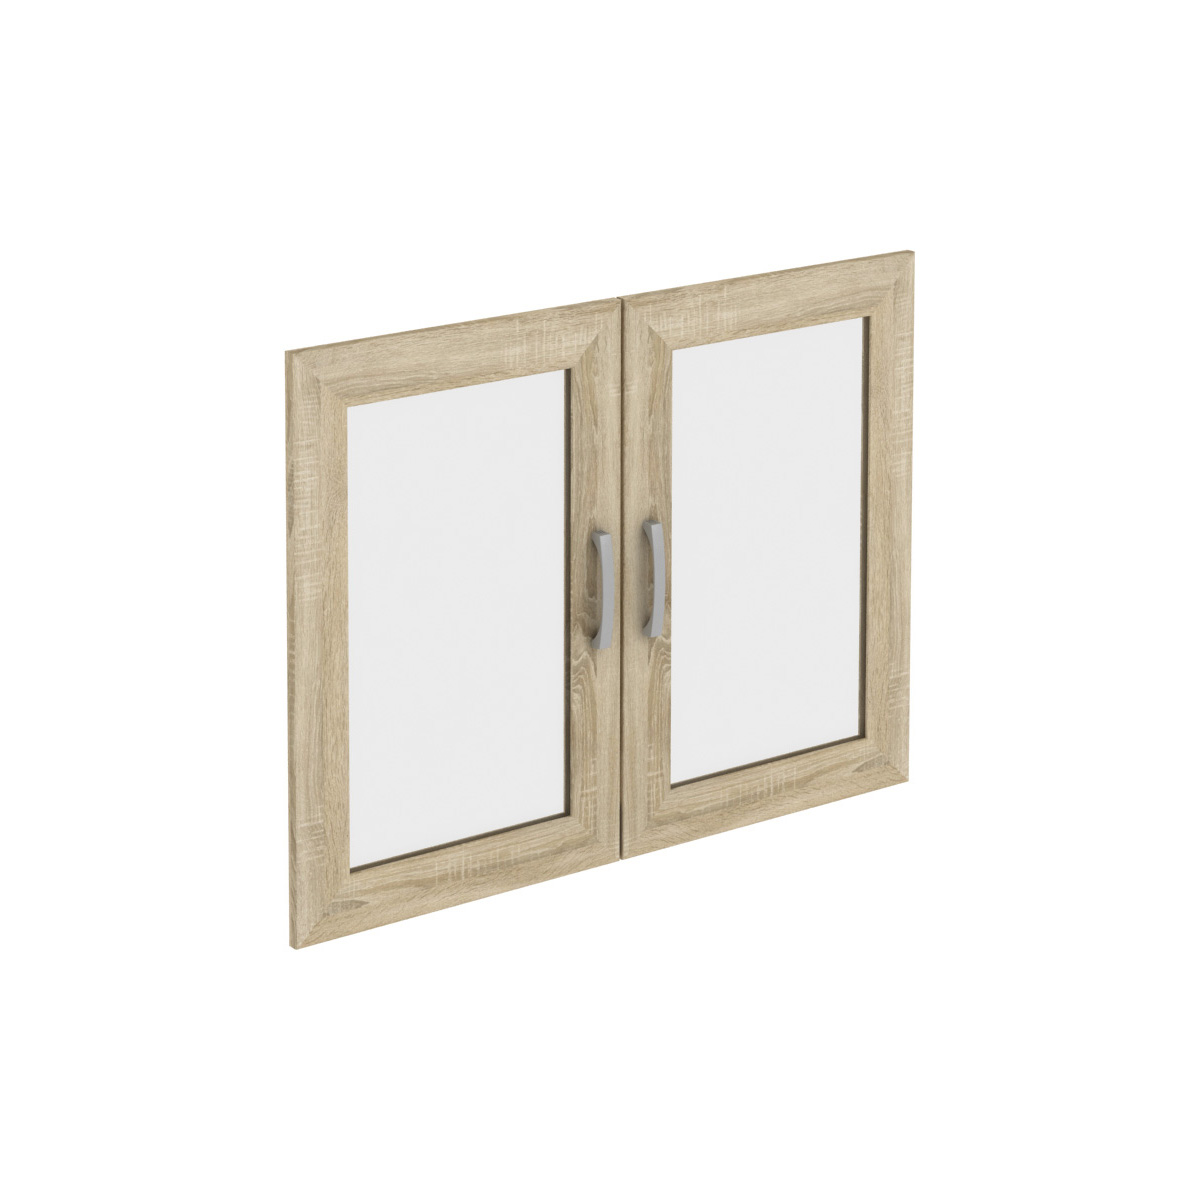 Д912.02 (2 шт.) дверь вставка стекло (668x444x18) 